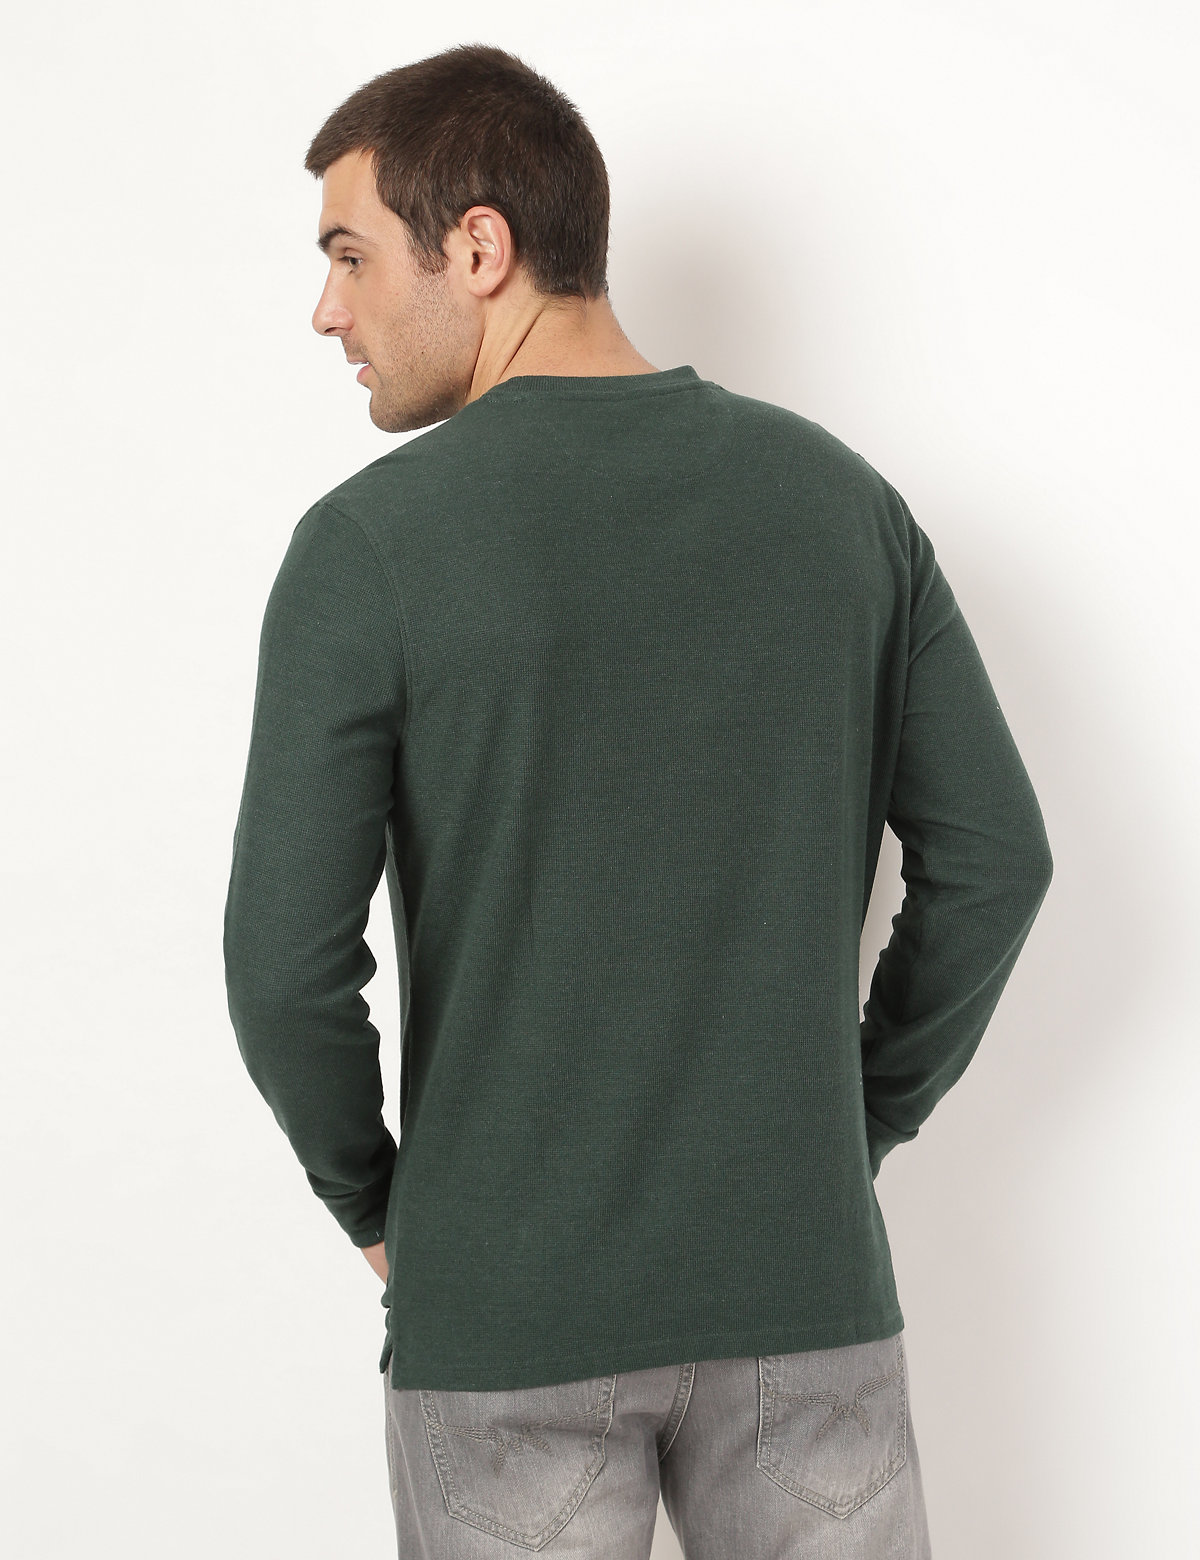 Cotton Mix Plain Round Neck Sweatshirt